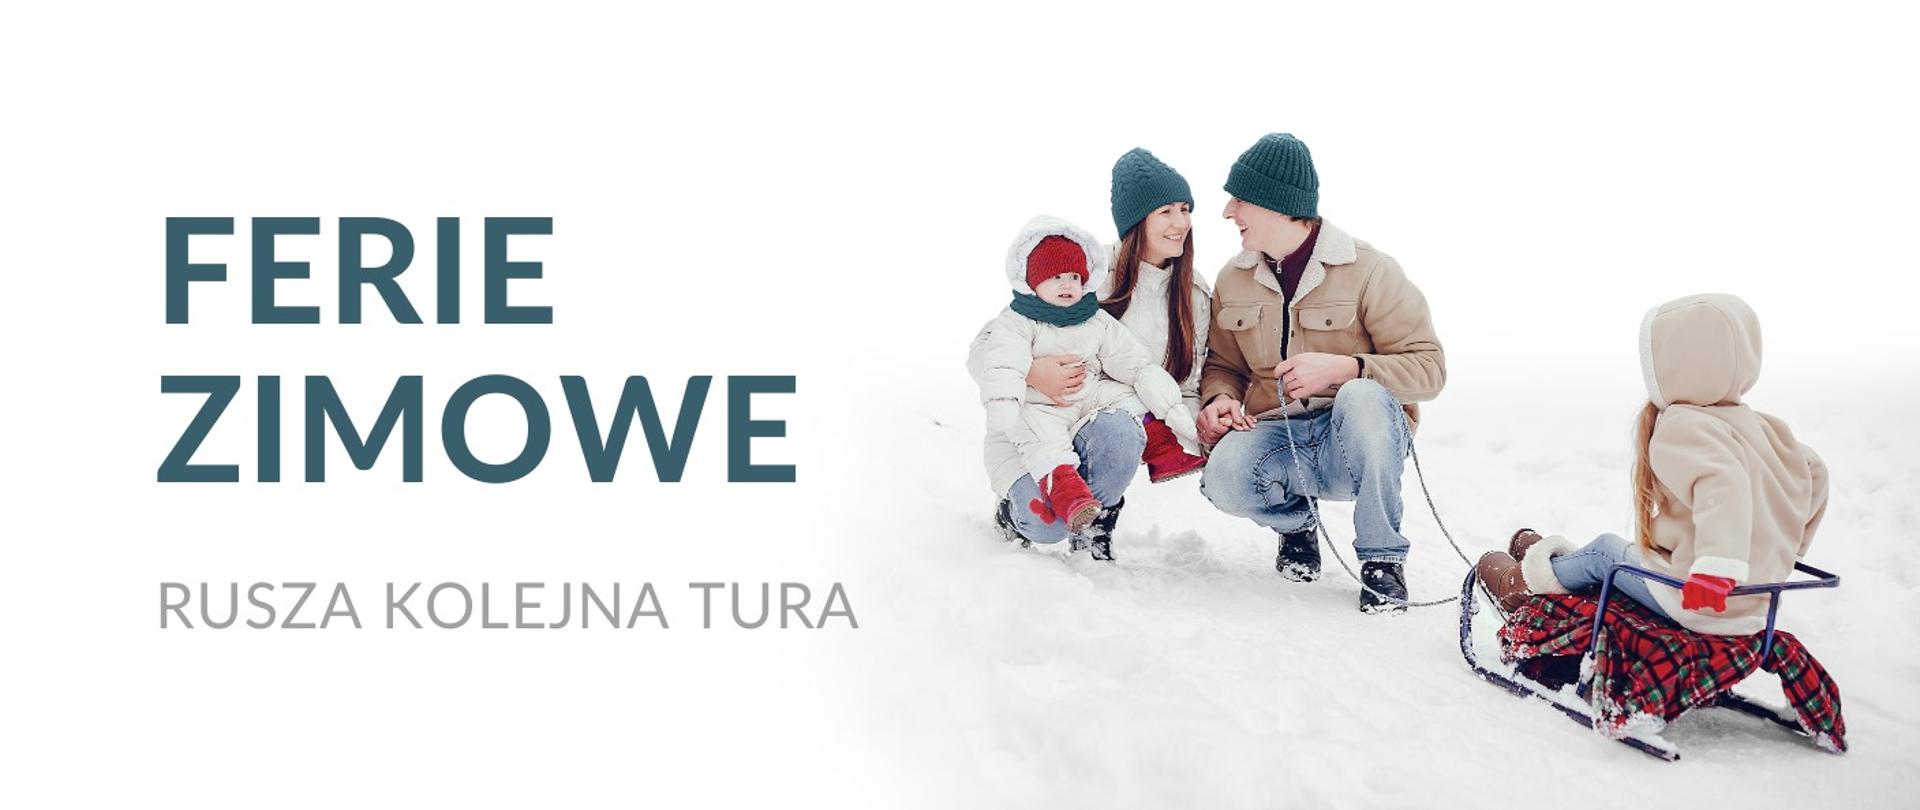 na planszy z lewej strony na białym tle napis Ferie zimowe i pod nim rusza kolejna tura. z prawej strony fotografia przedstawia rodzinę z dziećmi na śniegu i sankach. 